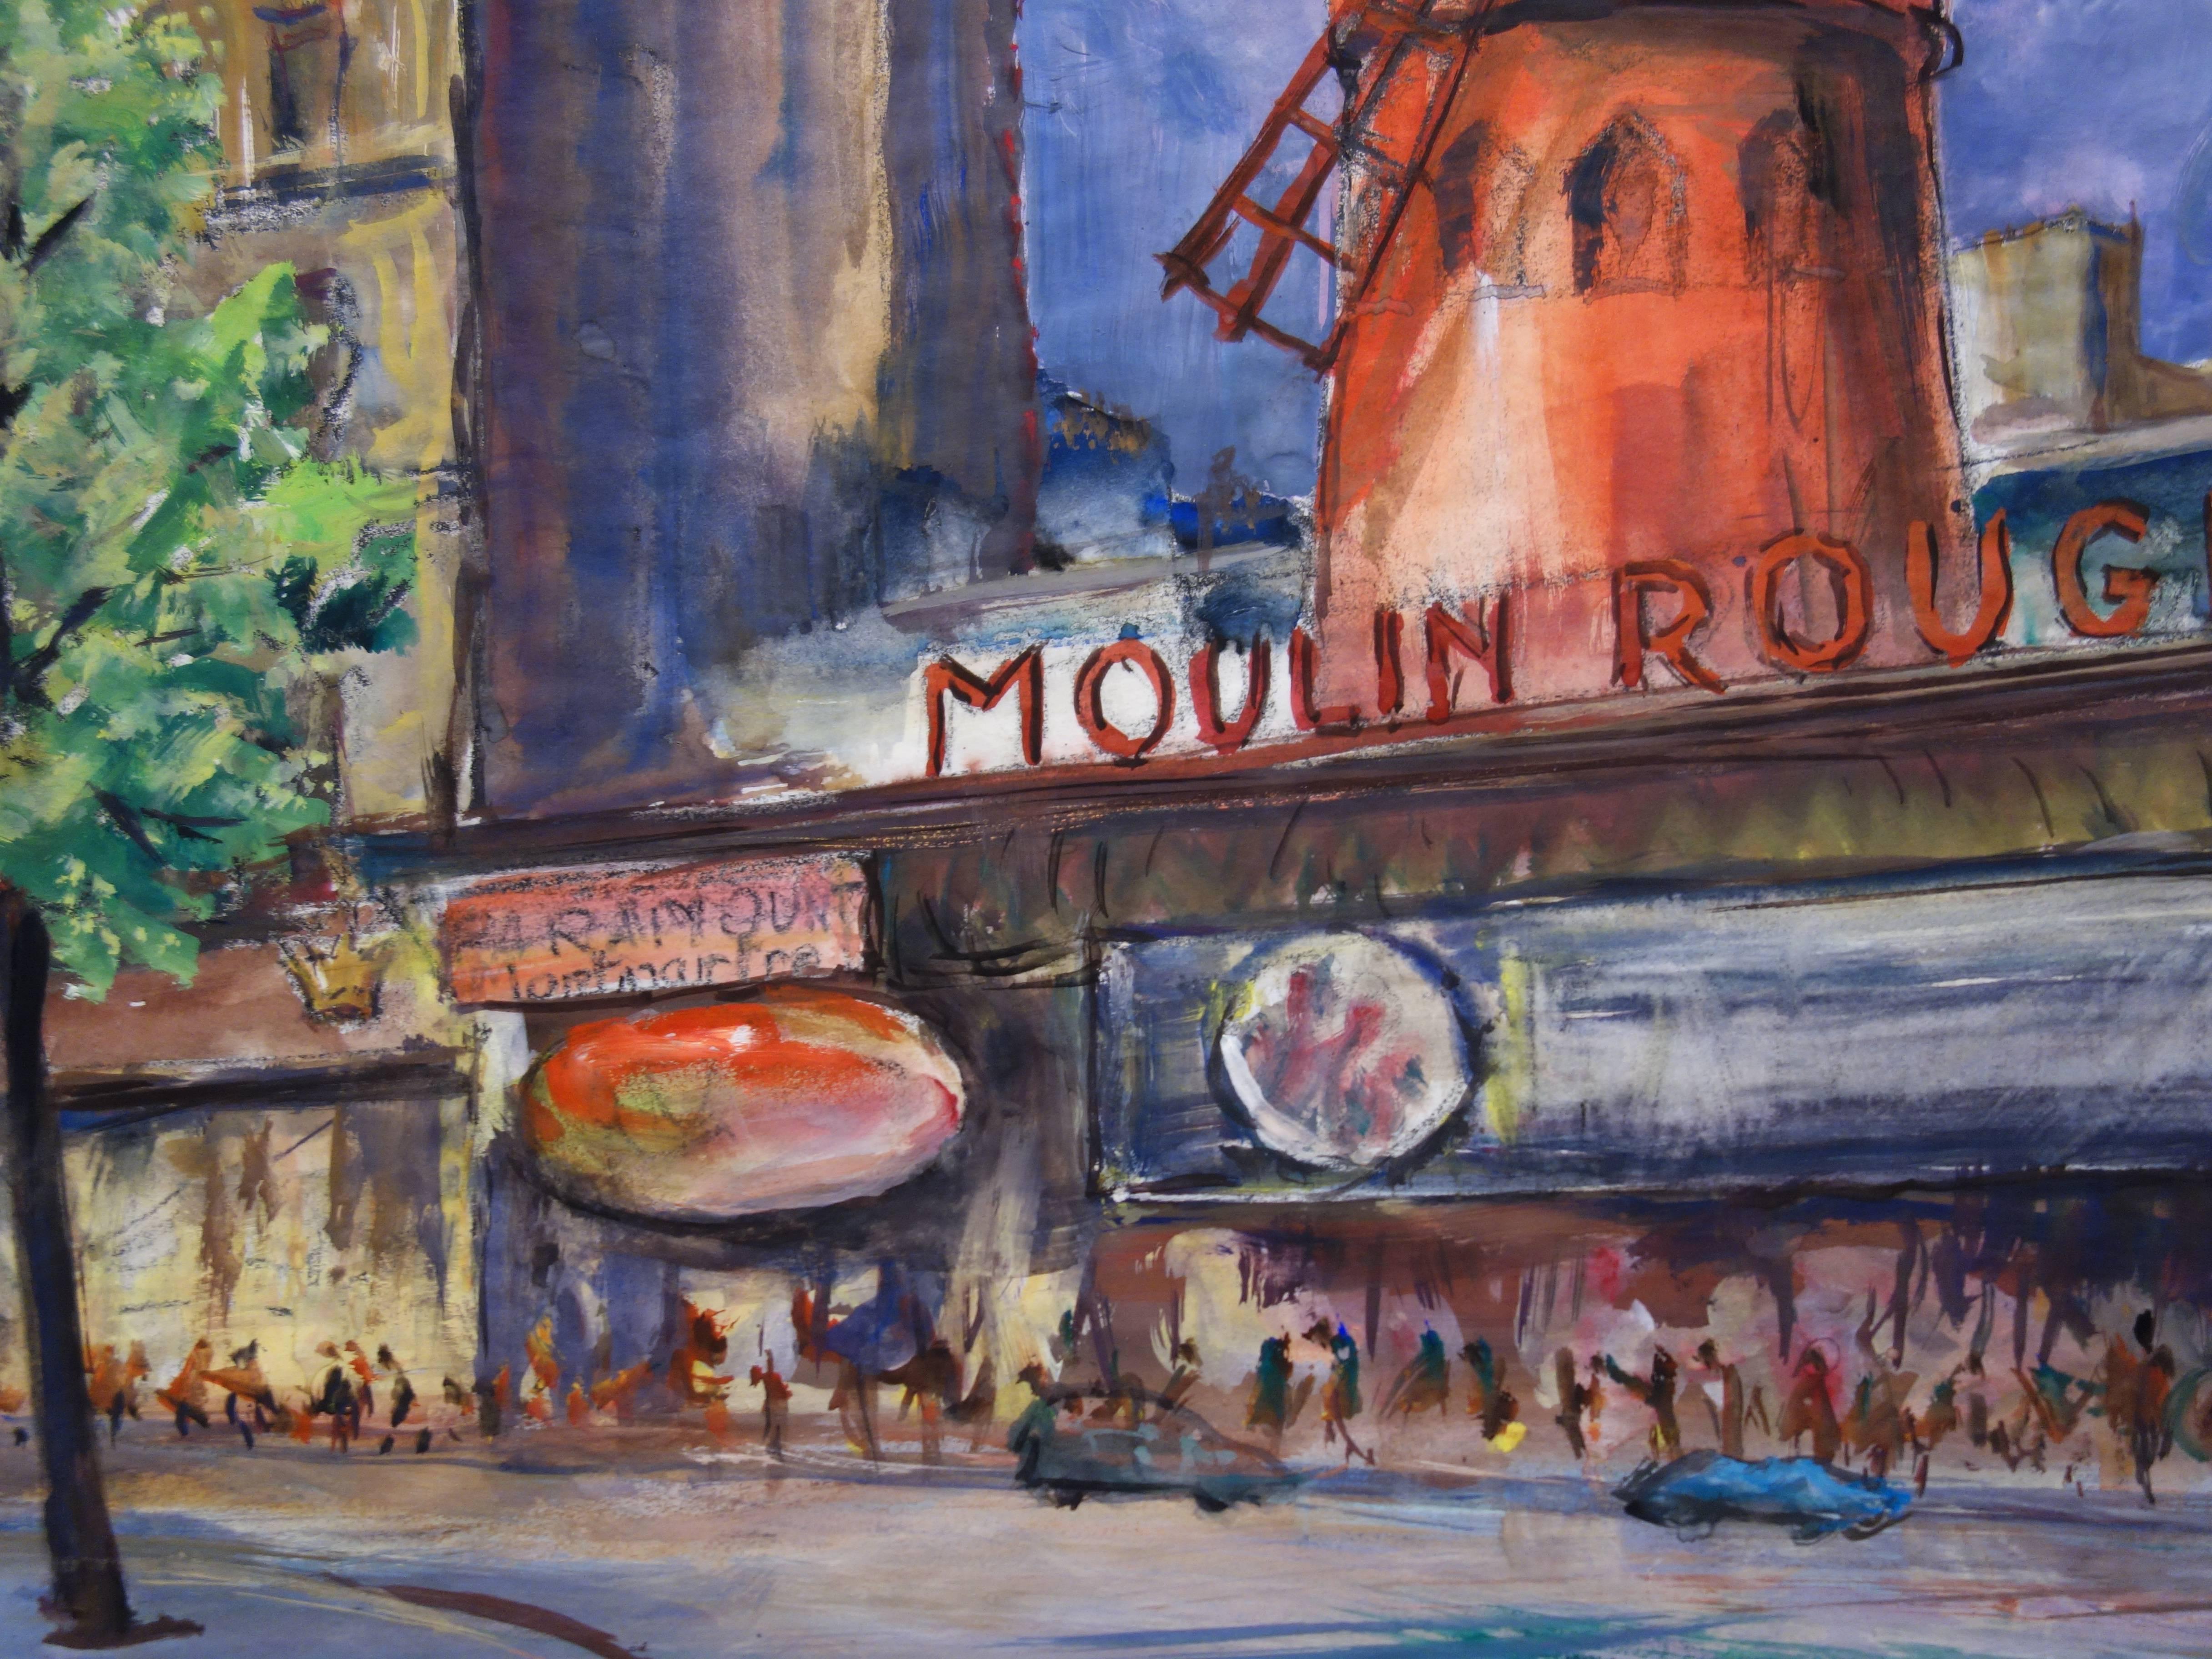 Paris : Moulin Rouge of Montmartre - Original watercolor - Post-Impressionist Art by Gaston Coppens